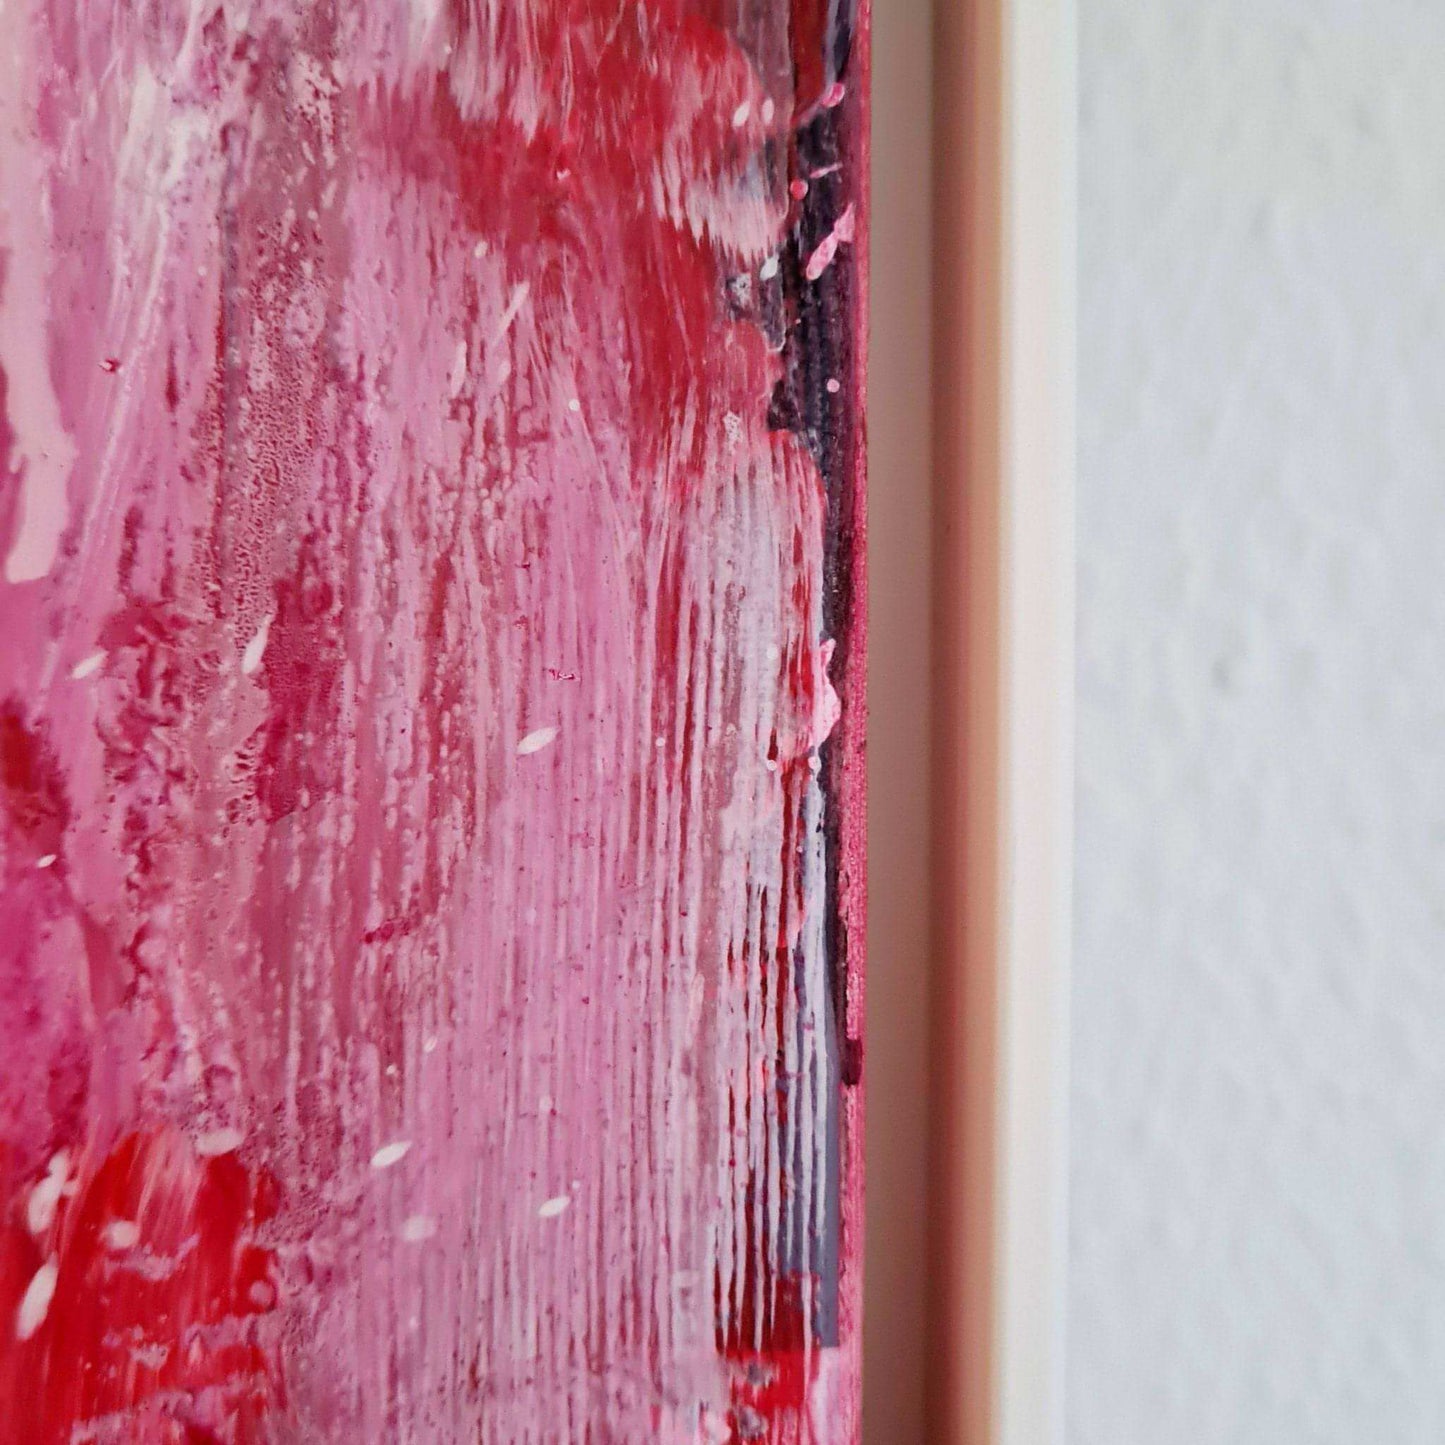 Rotes Kunstwerk für Treppenaufgang - Thema: Ideenrunde Abstrakte Bilder & moderne Auftragsmalerei, abstrakte große bilder online kaufen, Auftrags Malere